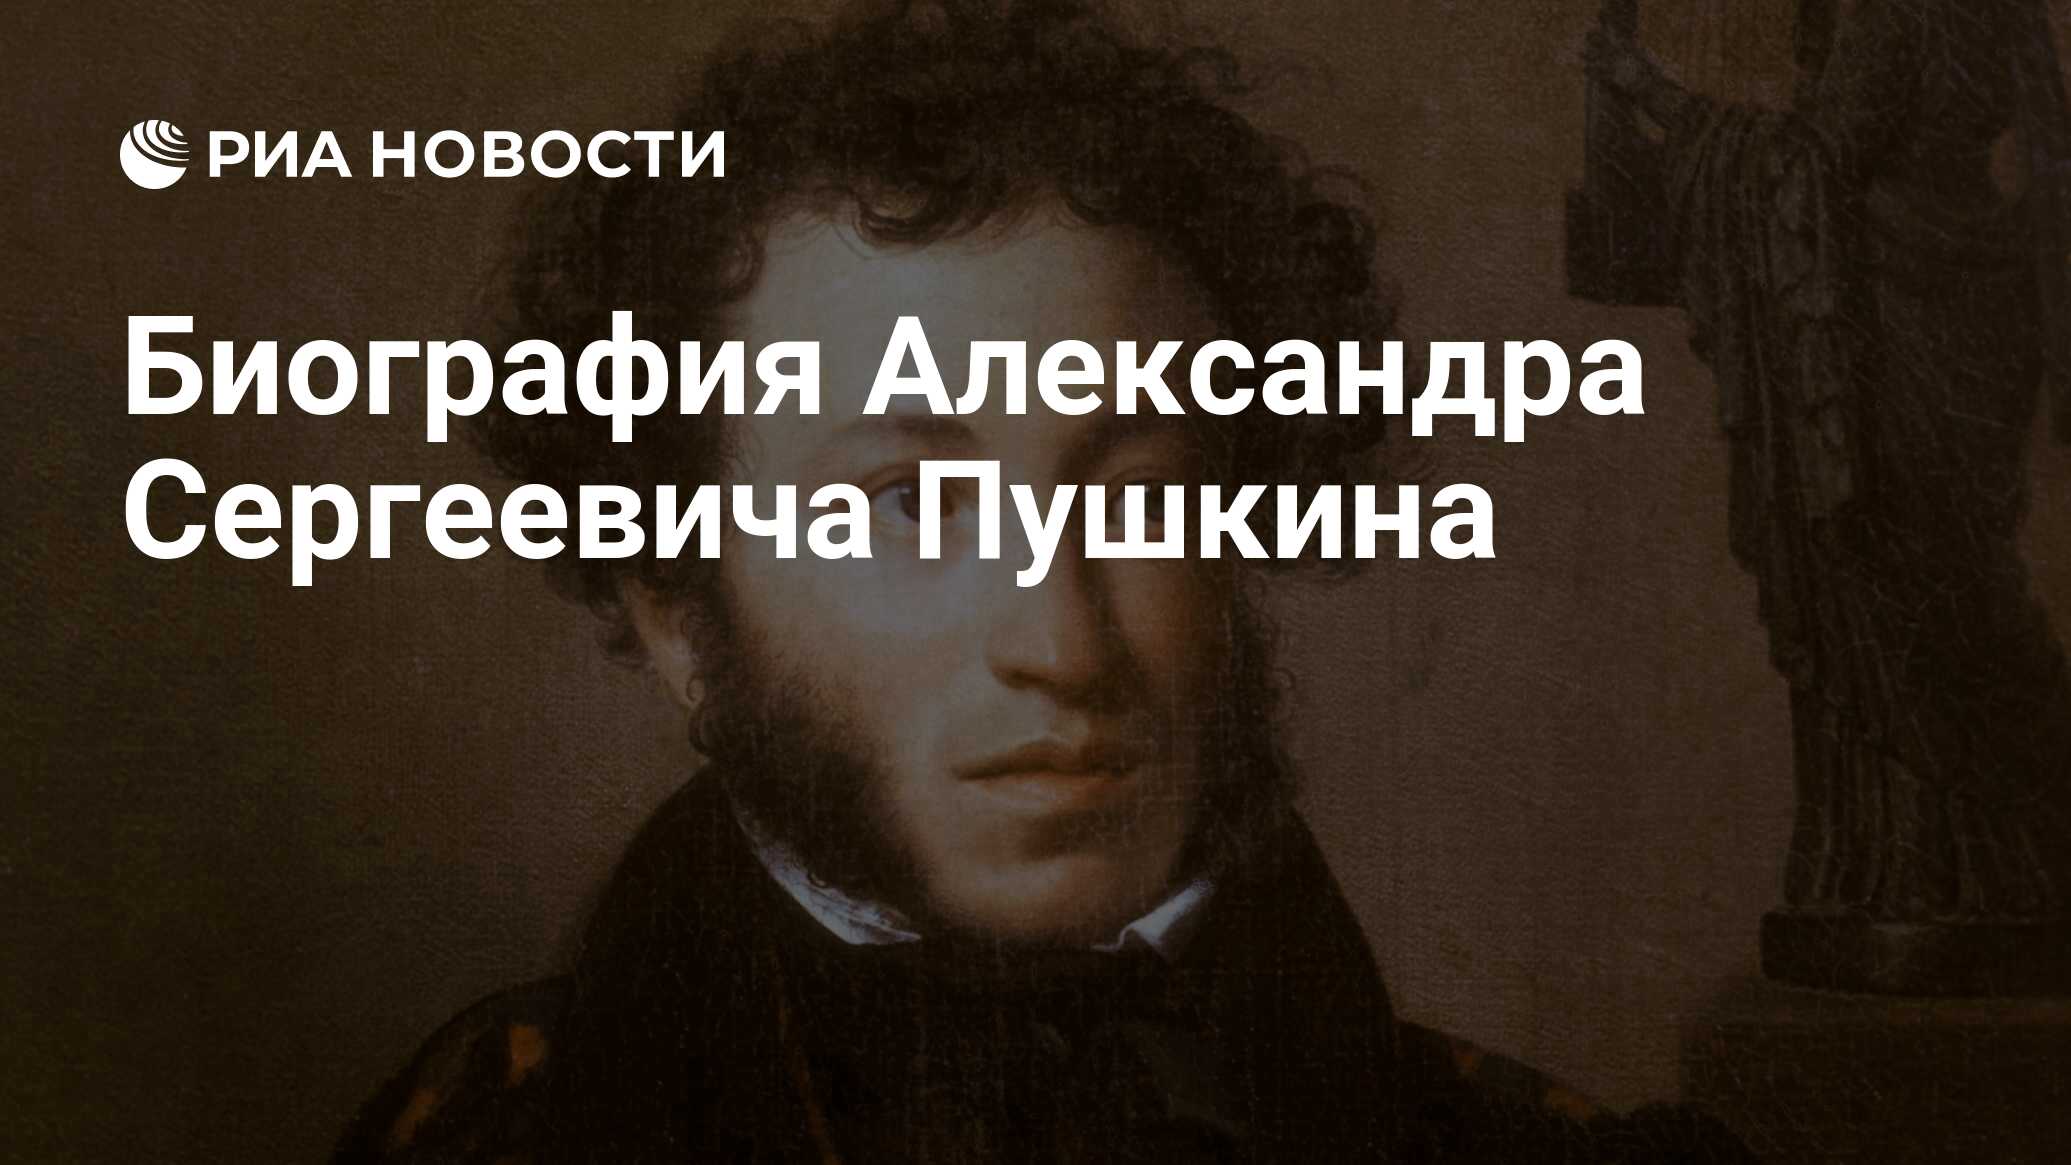 Доклад: Пушкин в роли министра образования